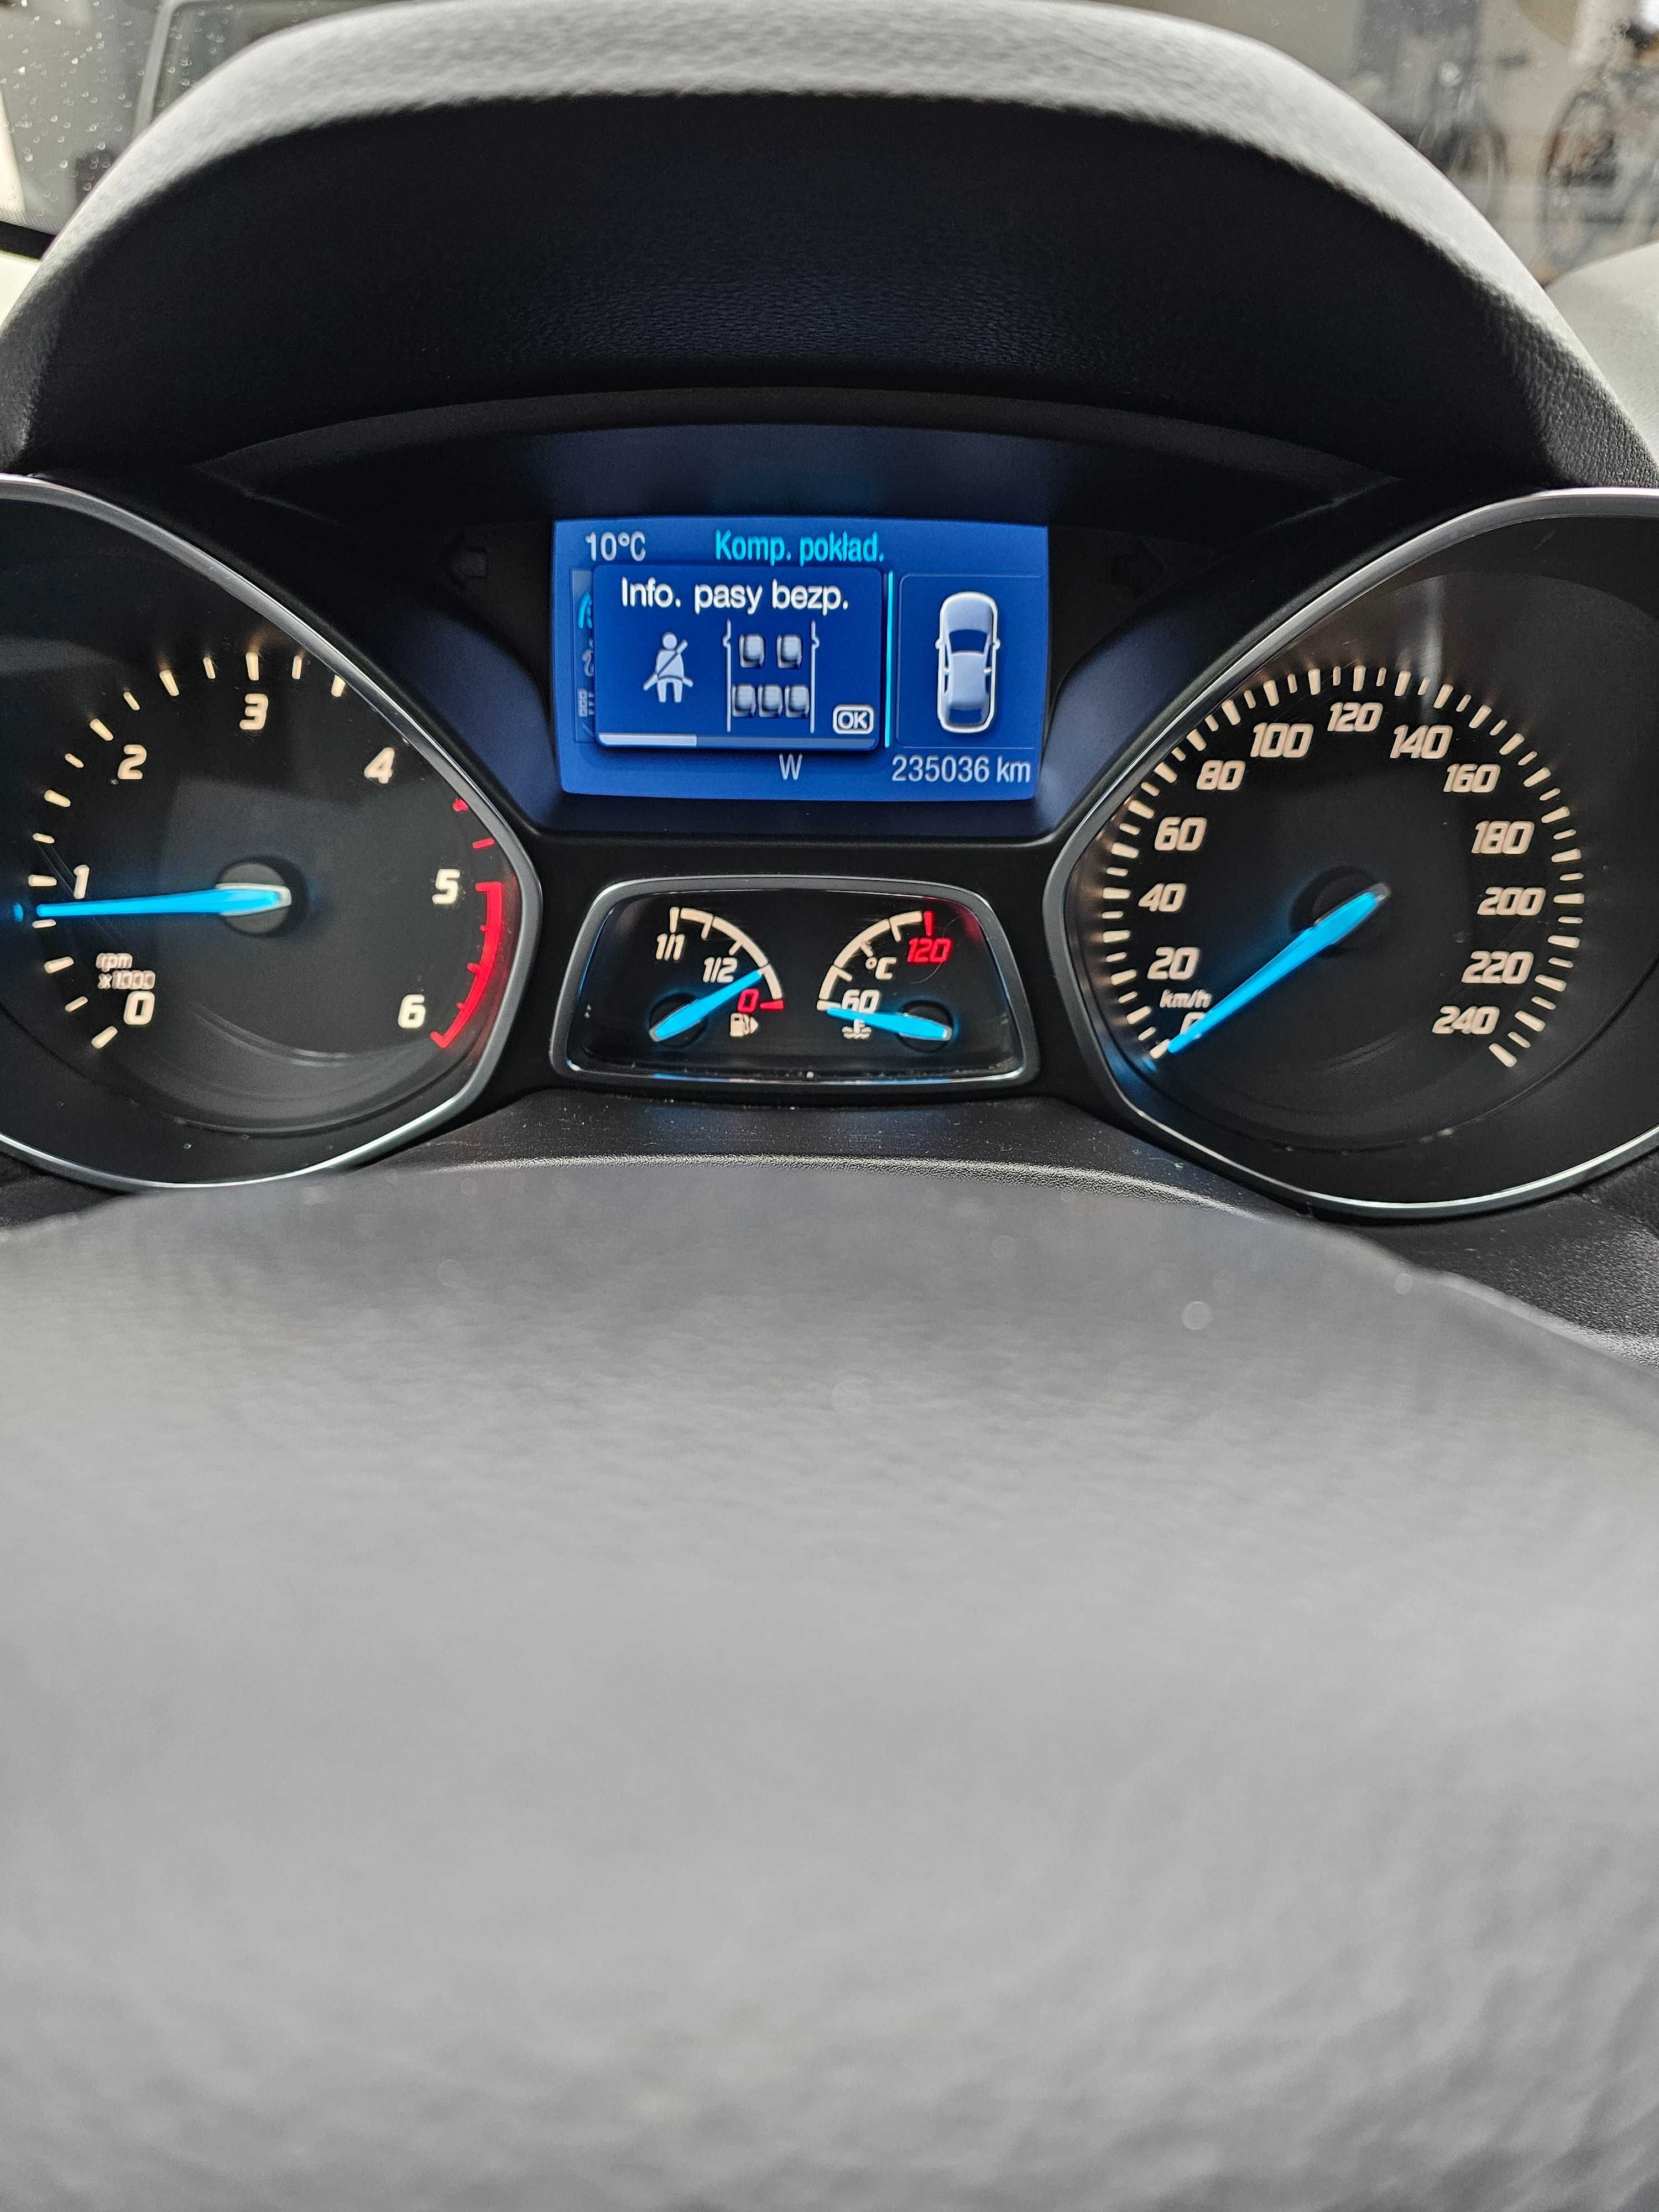 Ford KUGA LIFT 2.0 TDCI 140 KM. 2012 rok 4X4  Bezwypadkowa.